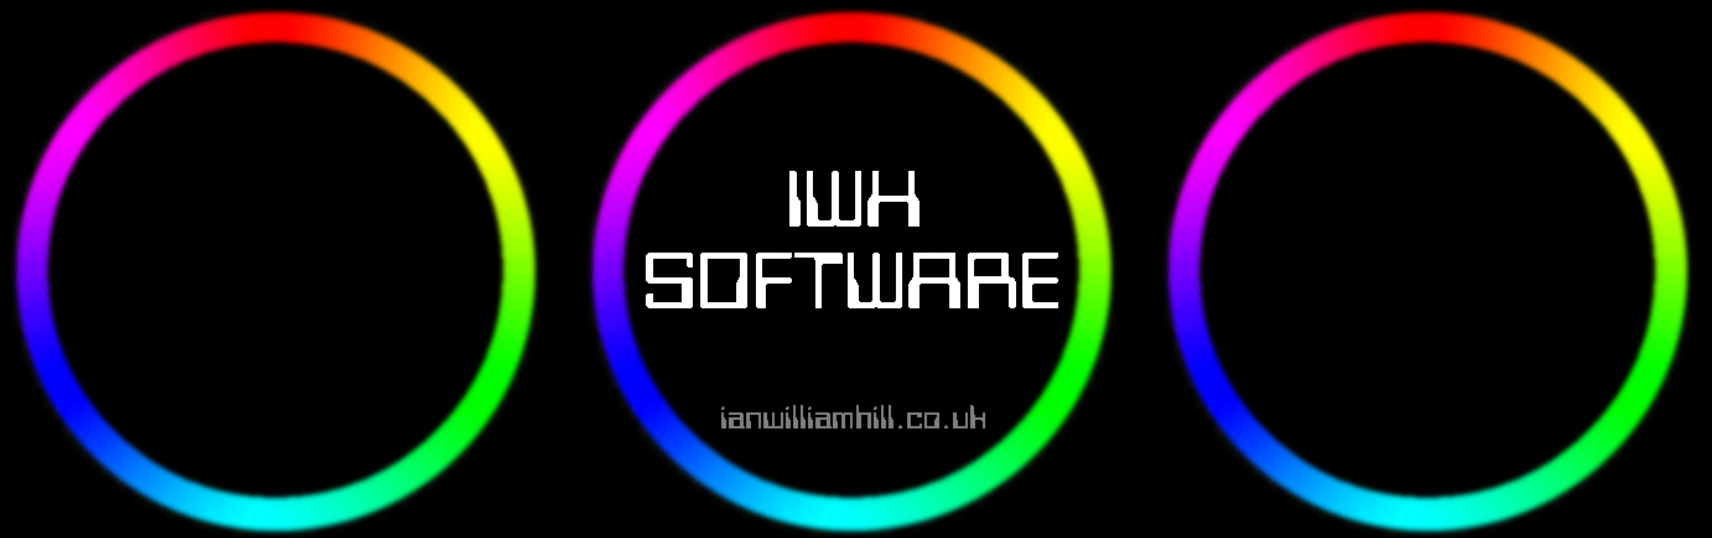 iwhsoftware